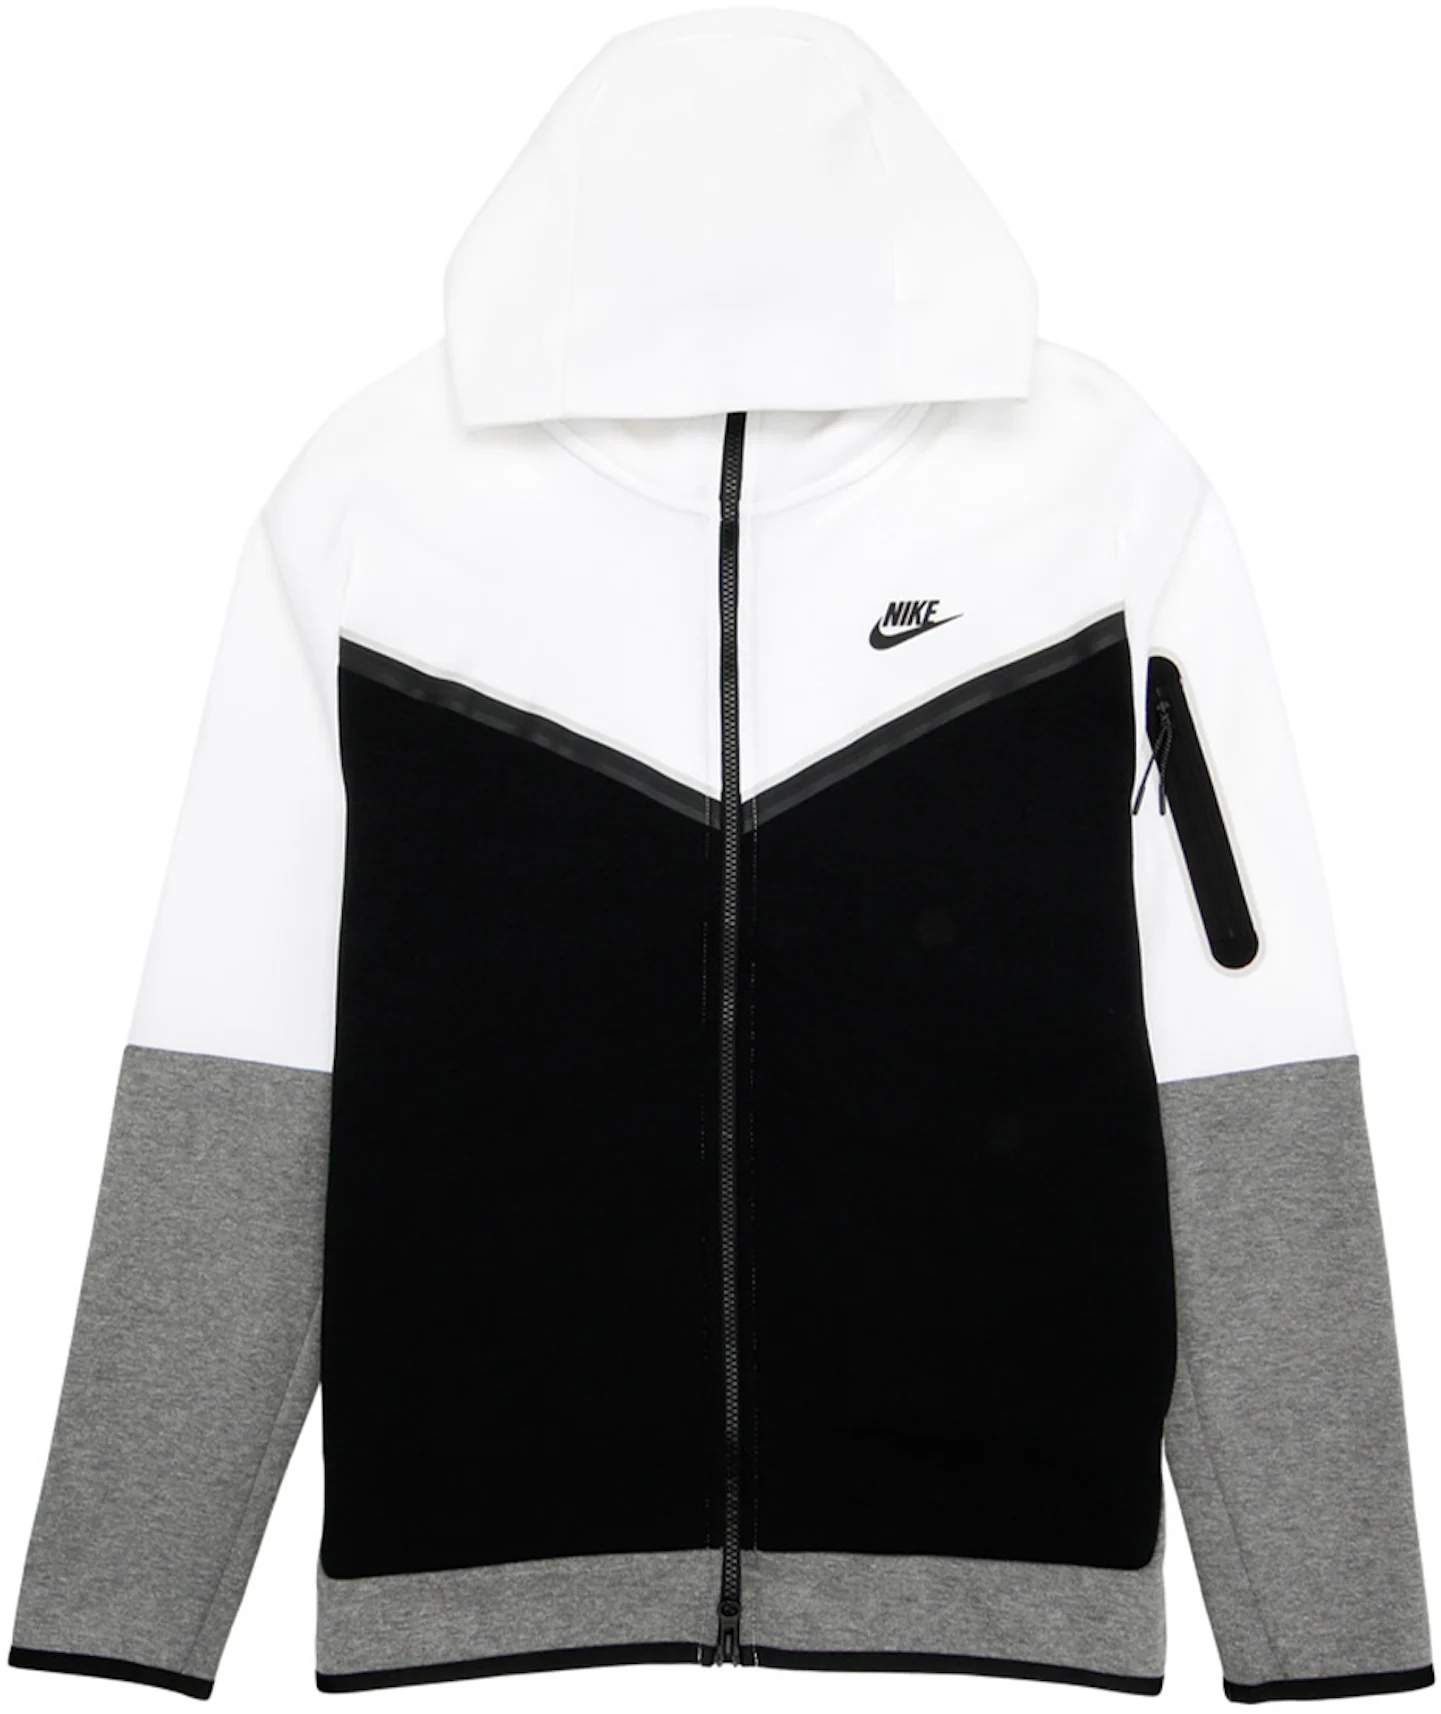 Nike Sportswear Hoodie Men's Tech Fleece Light Bone White Full Zip  Sweatshirt